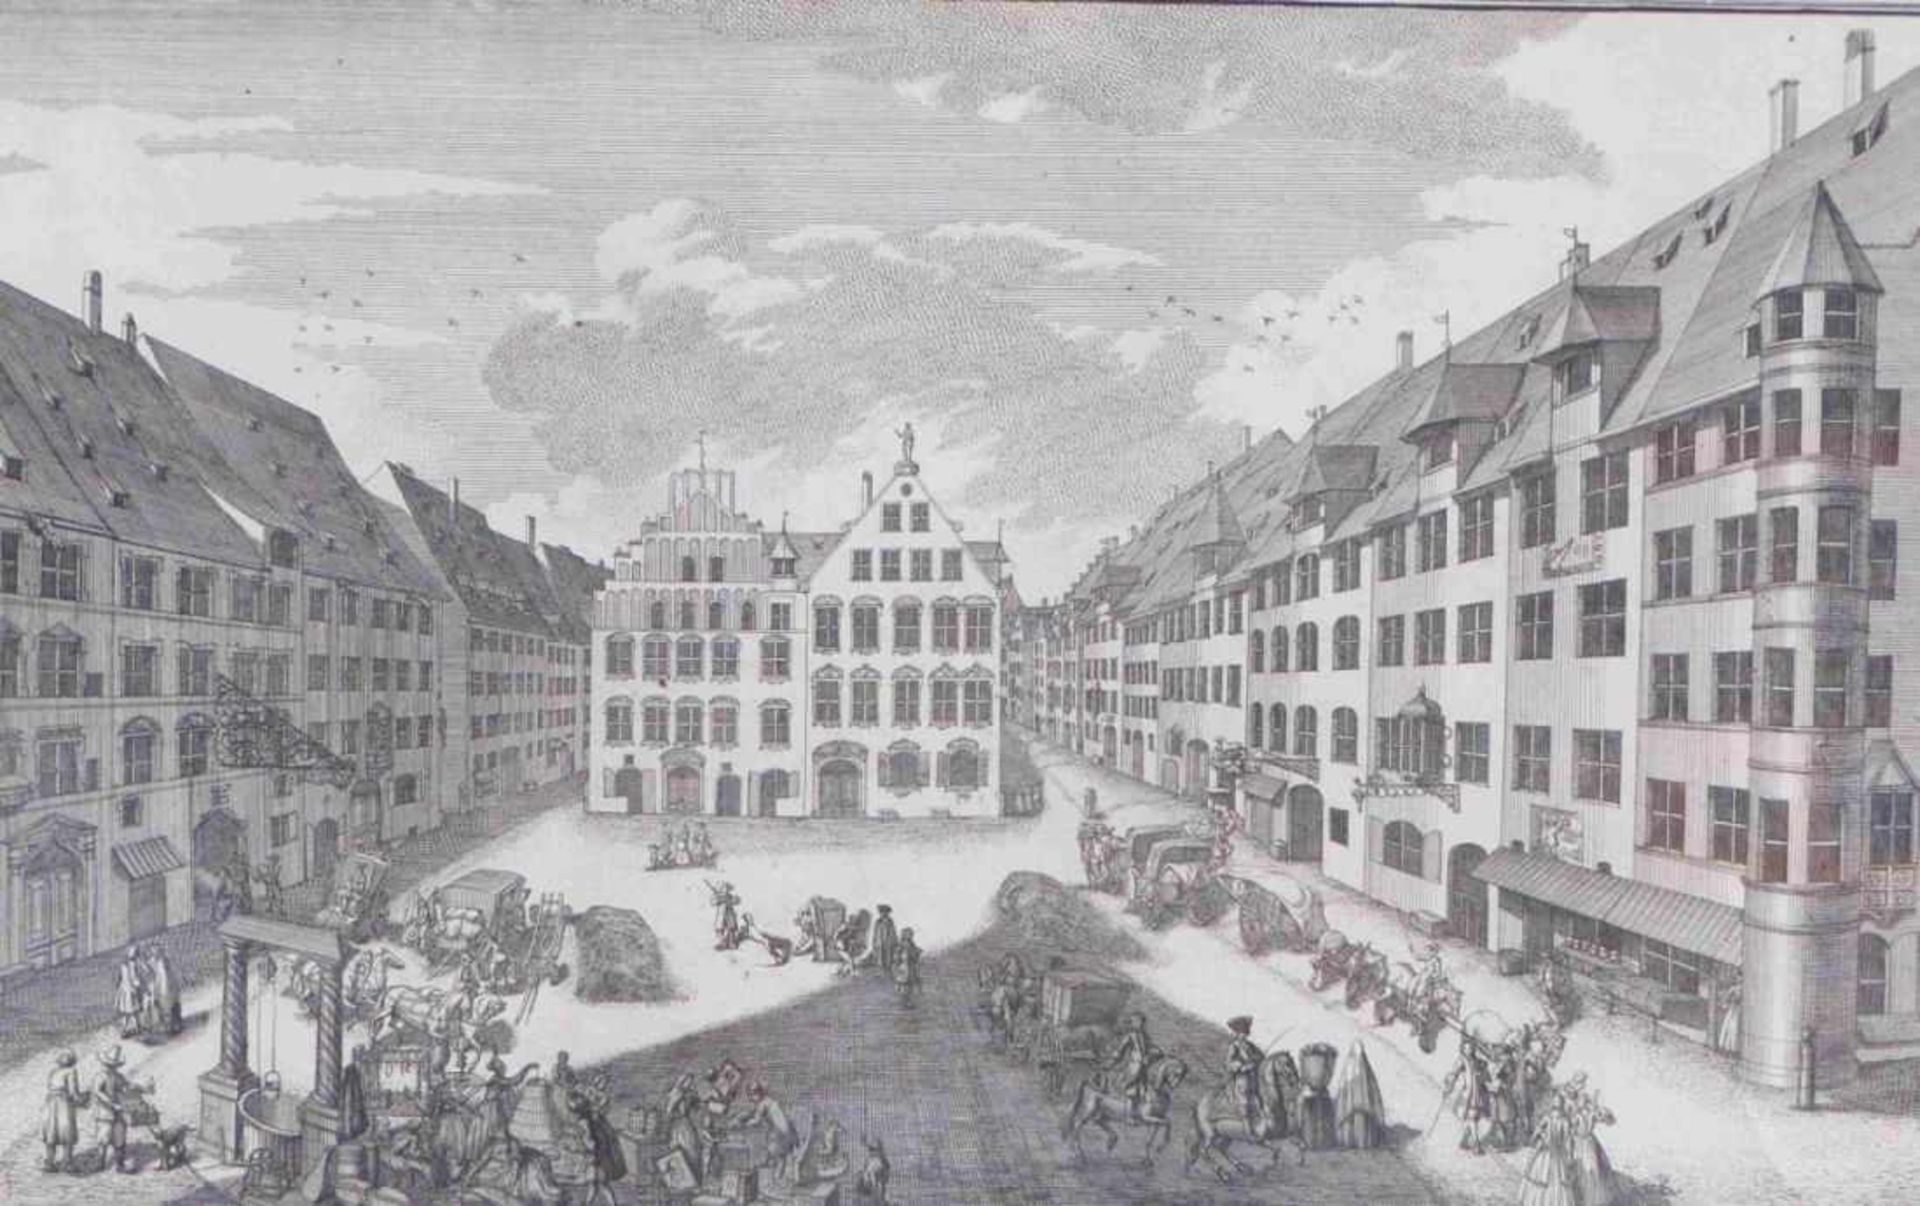 Delsenbach, Johann Adam''Nürnberg - Platz der Heumarckt genannt''(Nuremberg 1687-1765 ibid.)